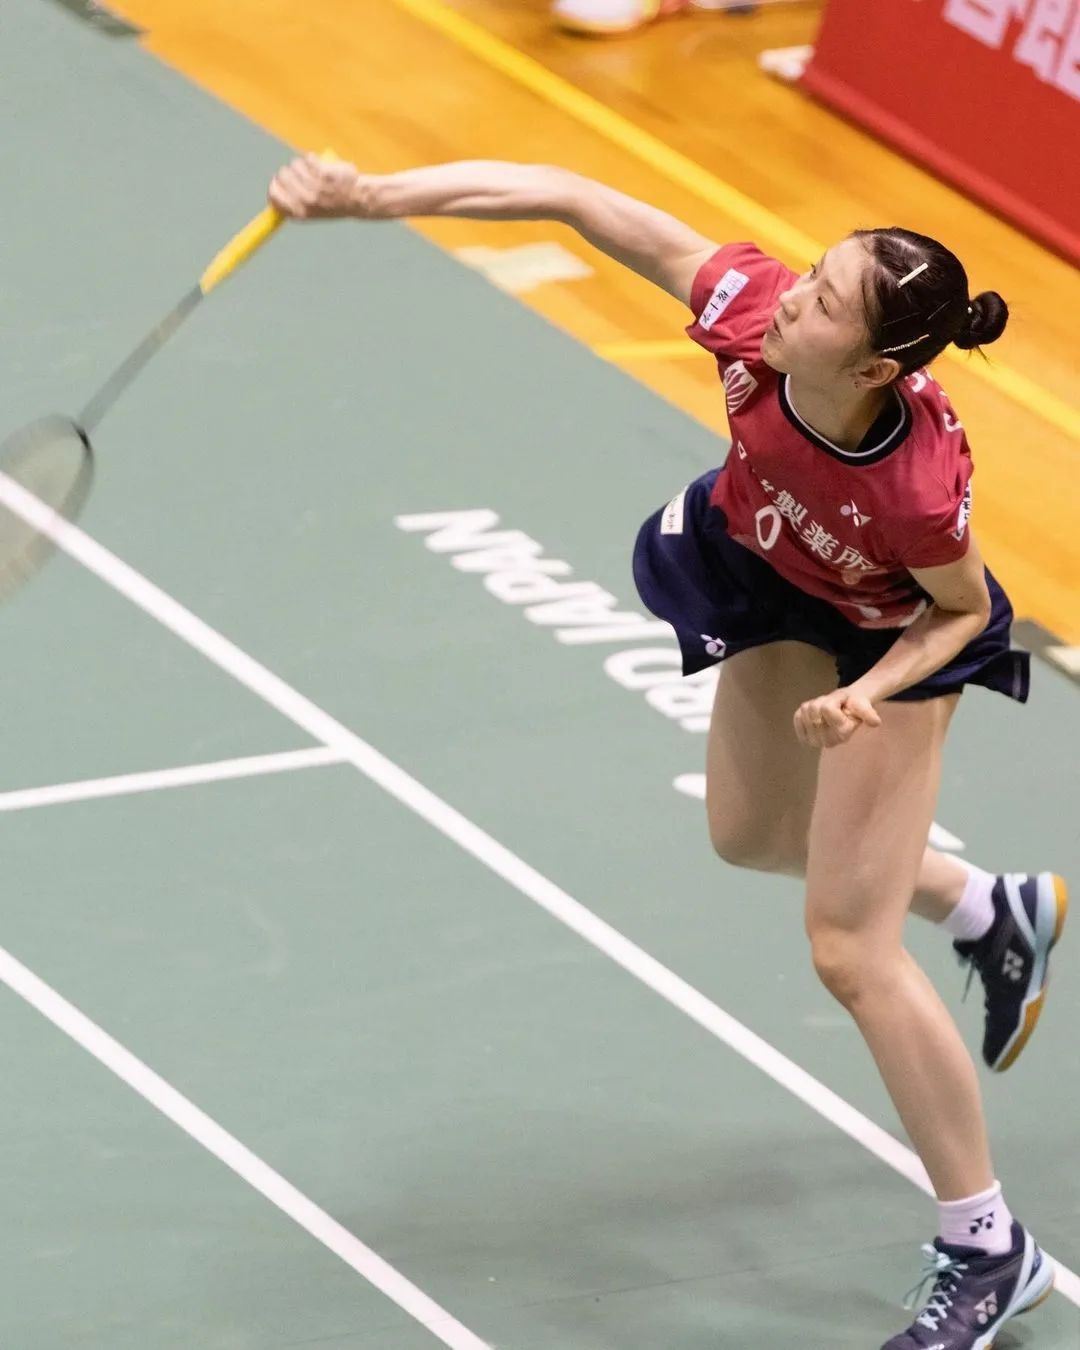 Nhan sắc thiên thần của Chiharu Shida, VĐV cầu lông Nhật Bản nổi tiếng nhất mạng xã hội Việt Nam - Ảnh 11.